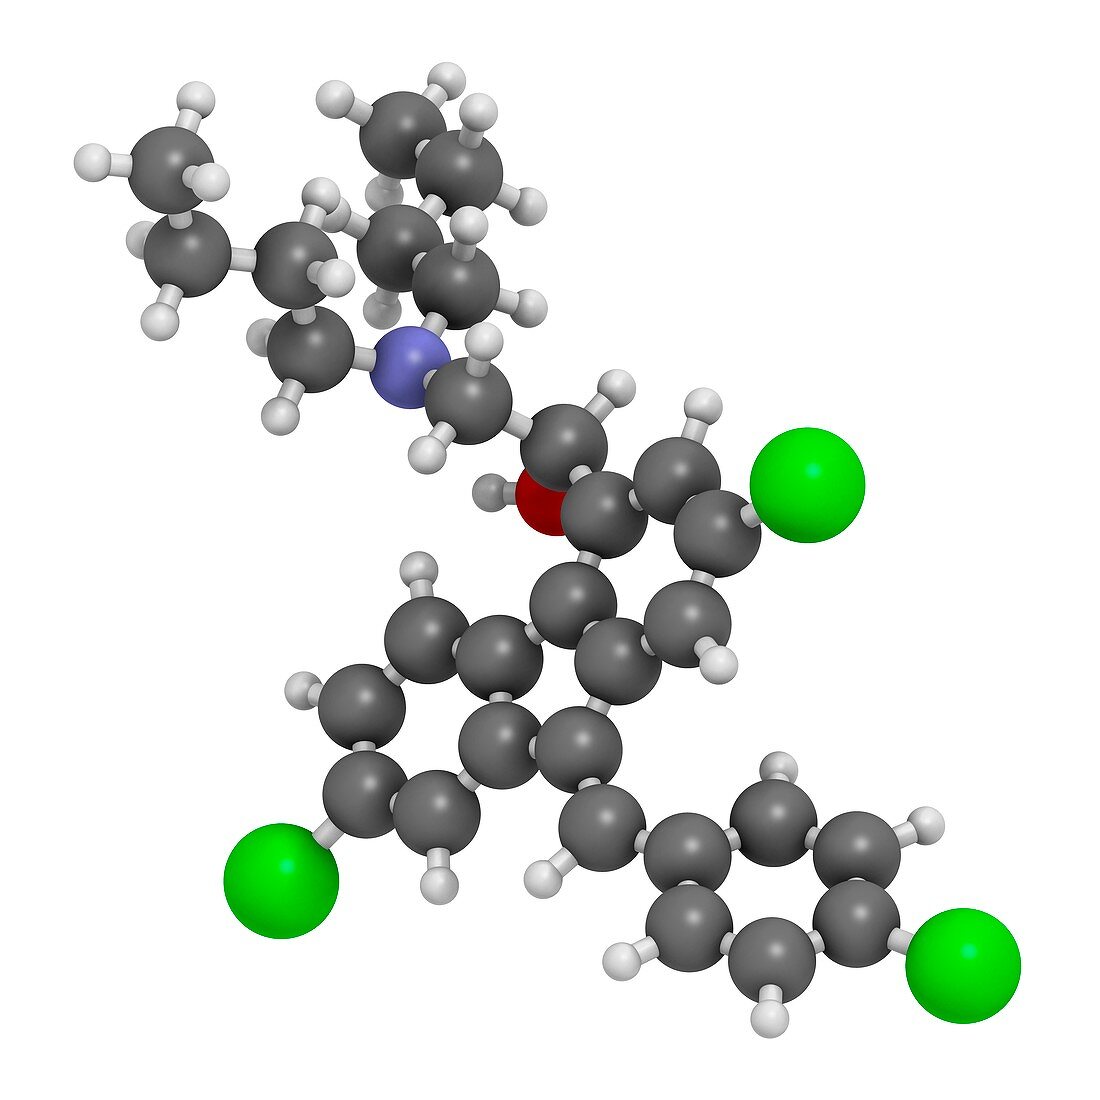 Lumefantrine antimalarial molecule